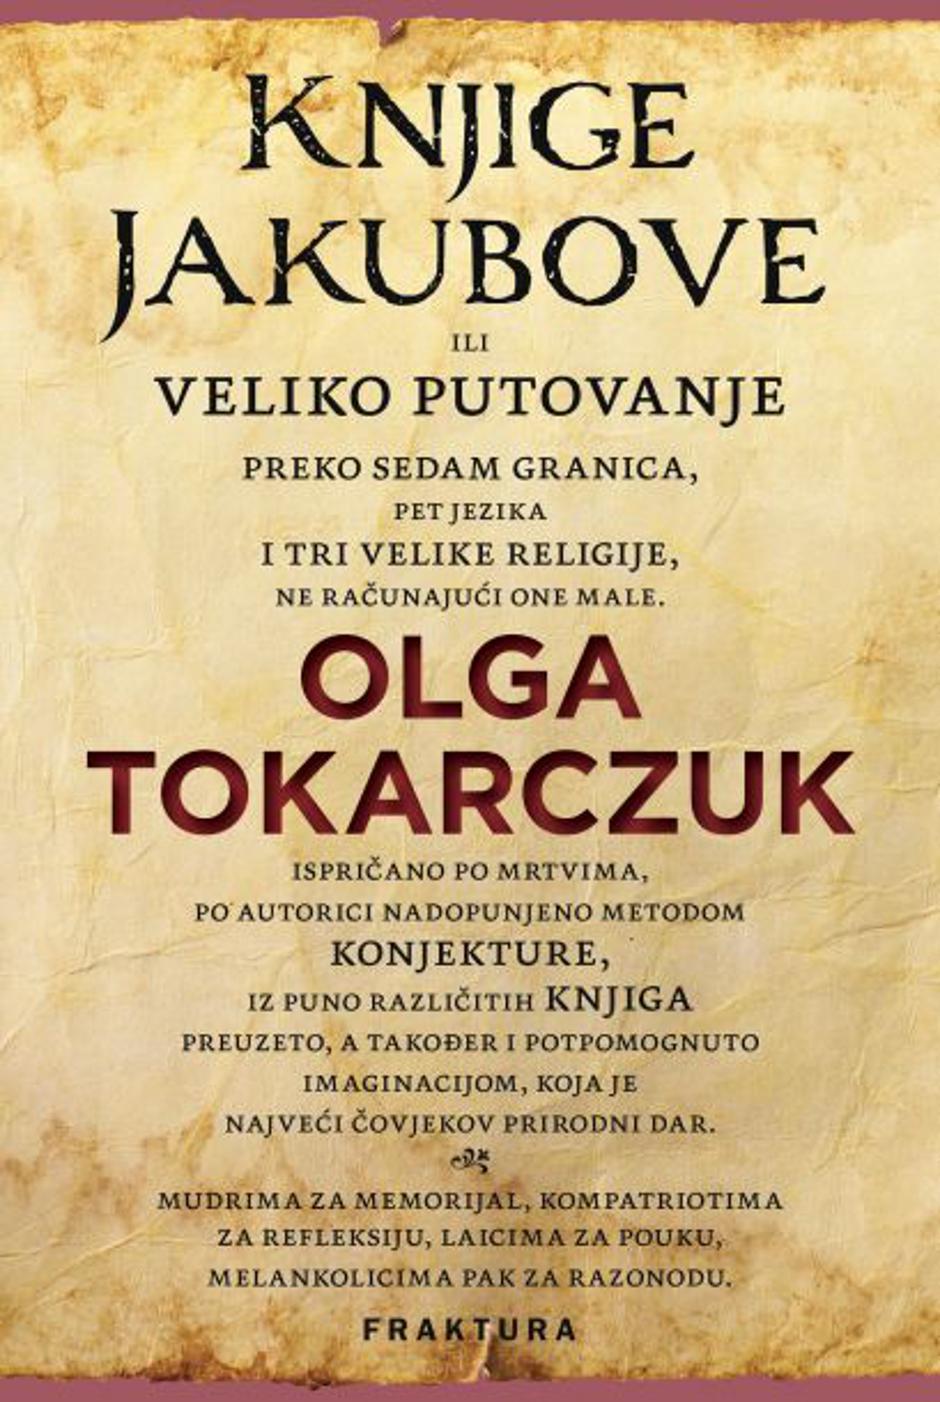 "Knjige Jakubove" | Author: Fraktura